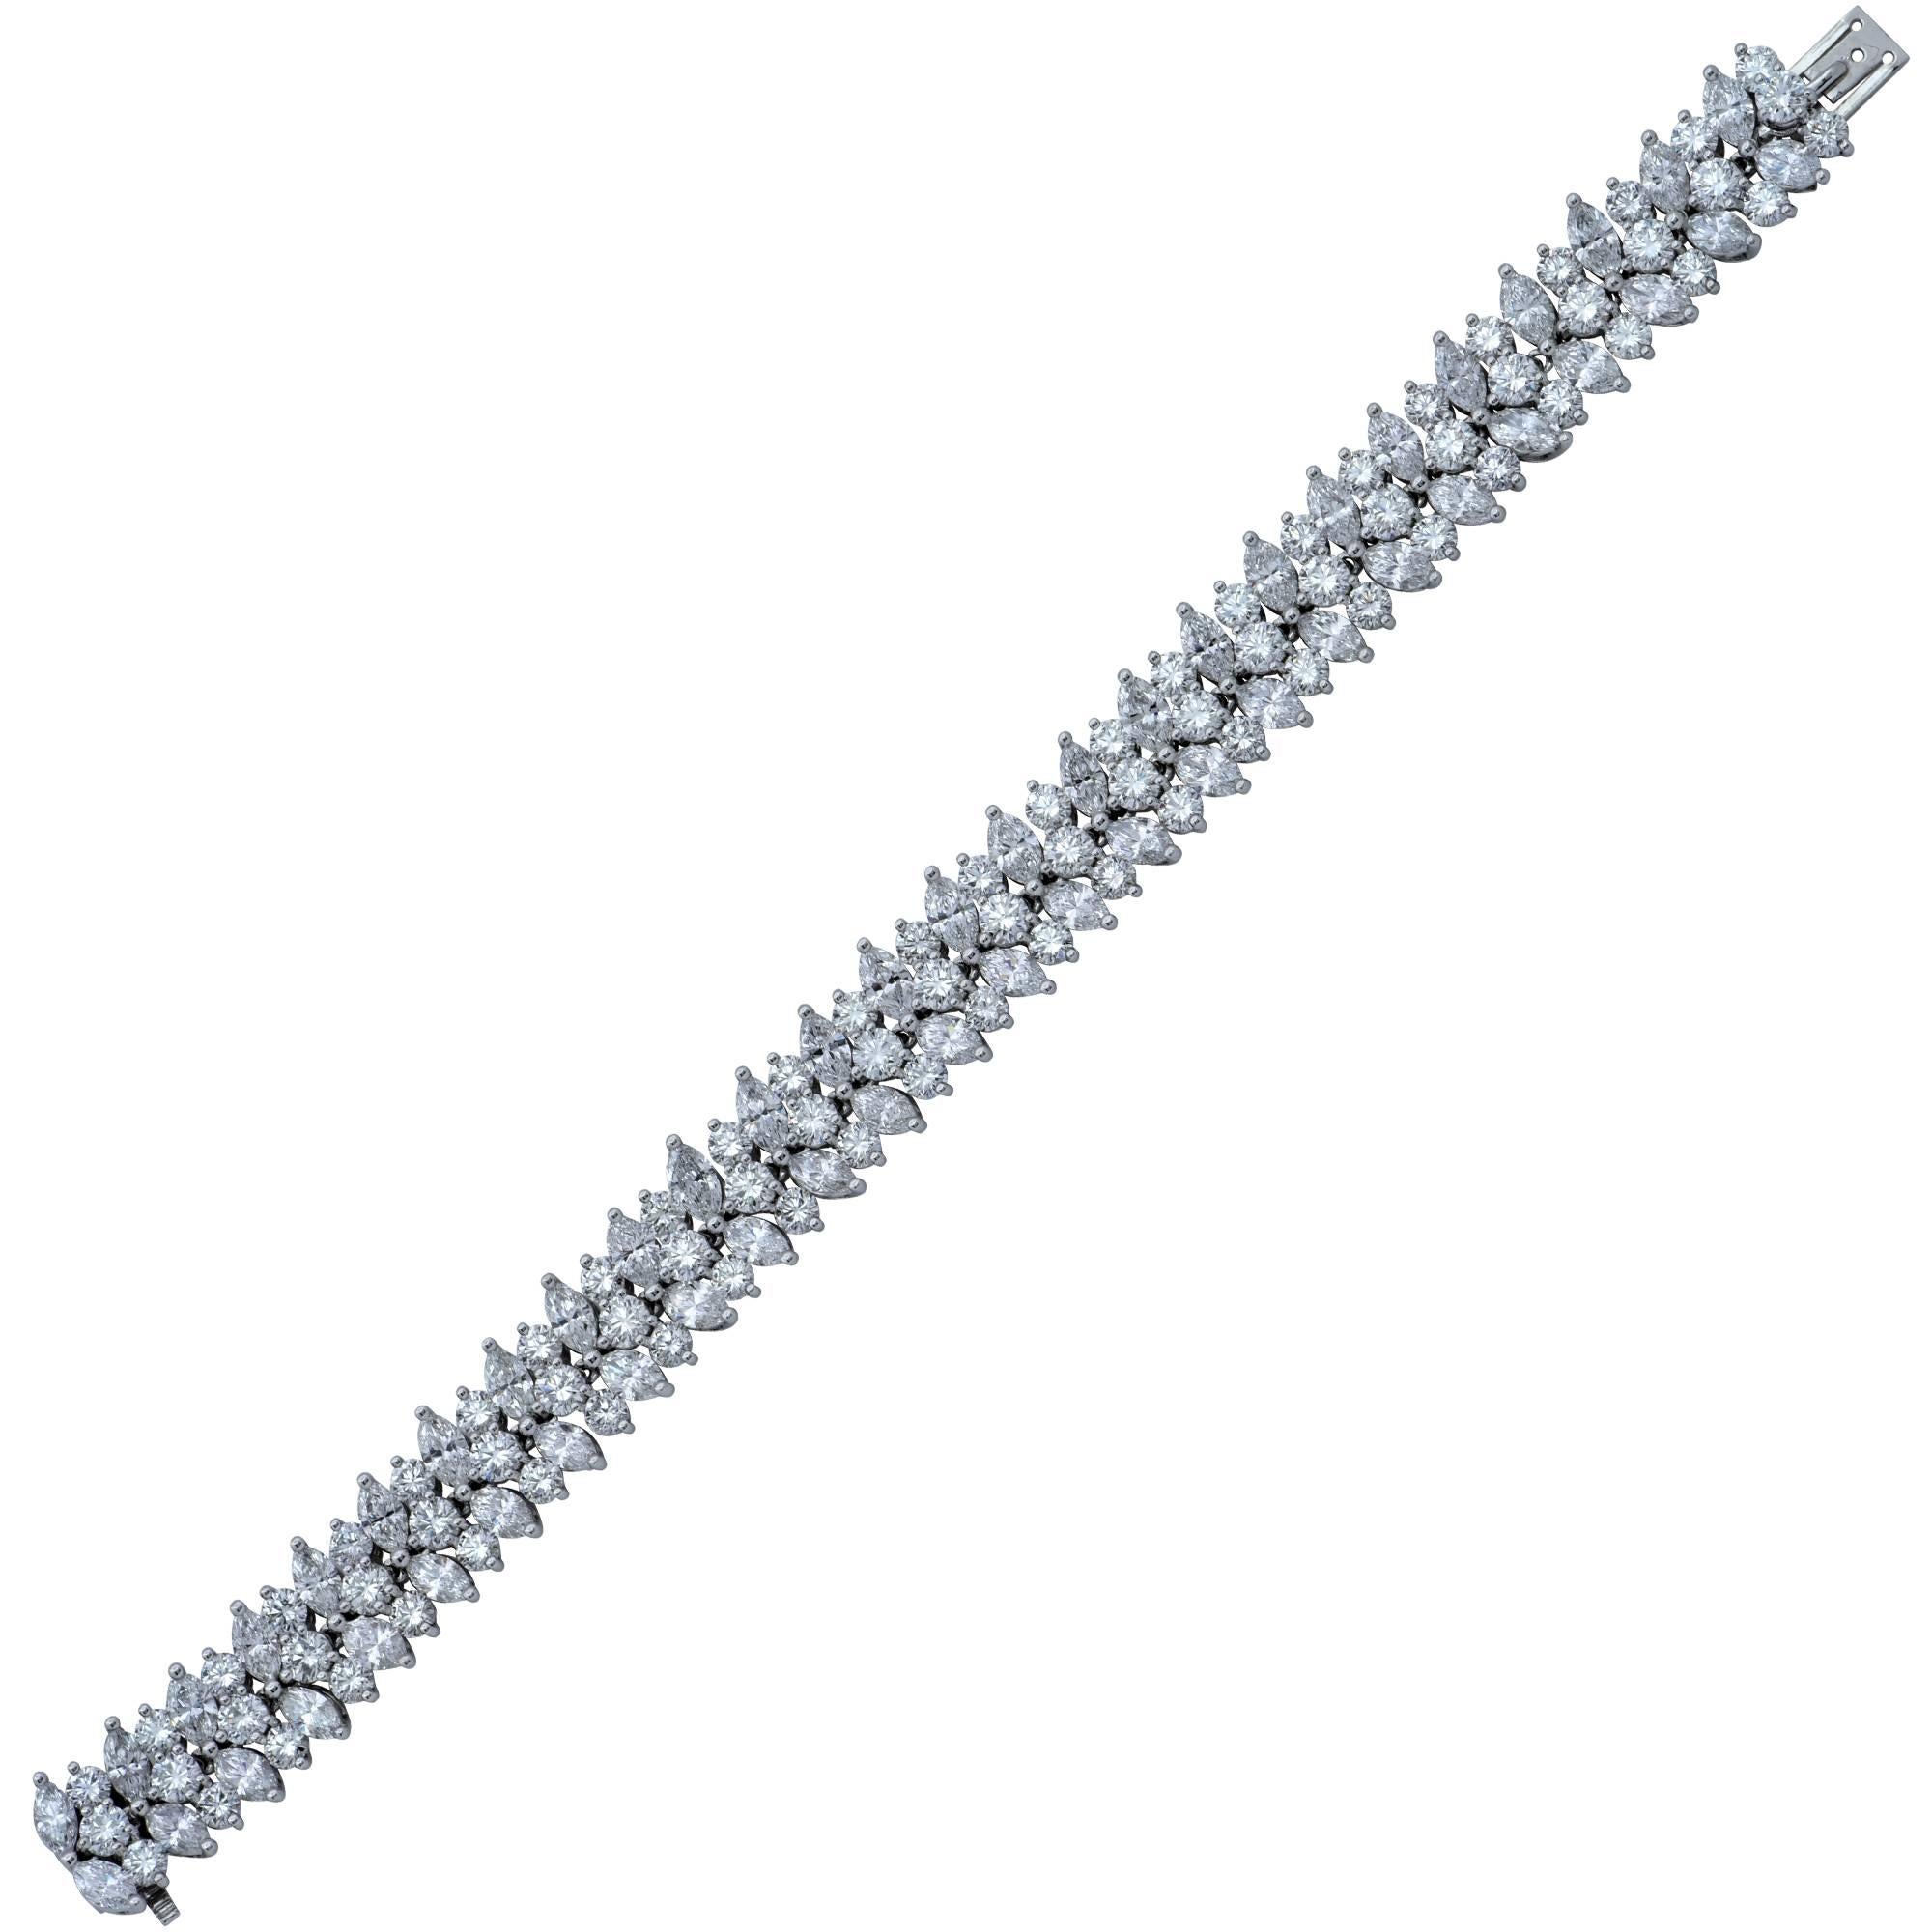 Bracelet en platine de Tiffany & Co. contenant 54 diamants taille marquise pesant approximativement 10.80cts F color VS clarity et 81 diamants ronds taille brillant pesant approximativement 9.45cts F color et VS clarity.

Ce bracelet spectaculaire